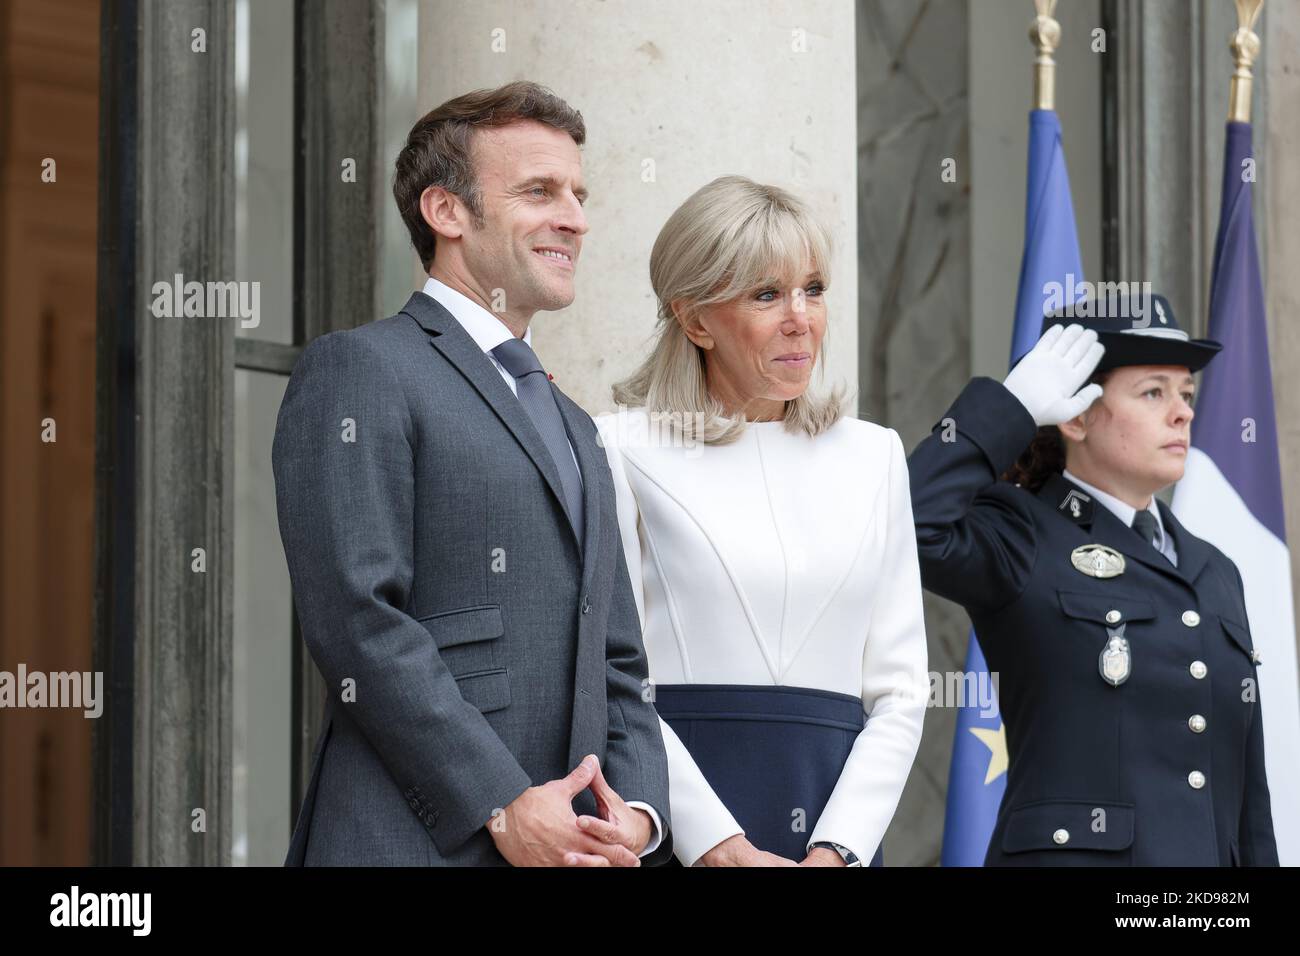 Le président français Emmanuel Macron (L) et son épouse Brigitte Macron (R) arrivent à accueillir le Premier ministre indien Narendra Modi avant leur rencontre à l'Elysée - 4 mai 2022, Paris (photo de Daniel Pier/NurPhoto) Banque D'Images